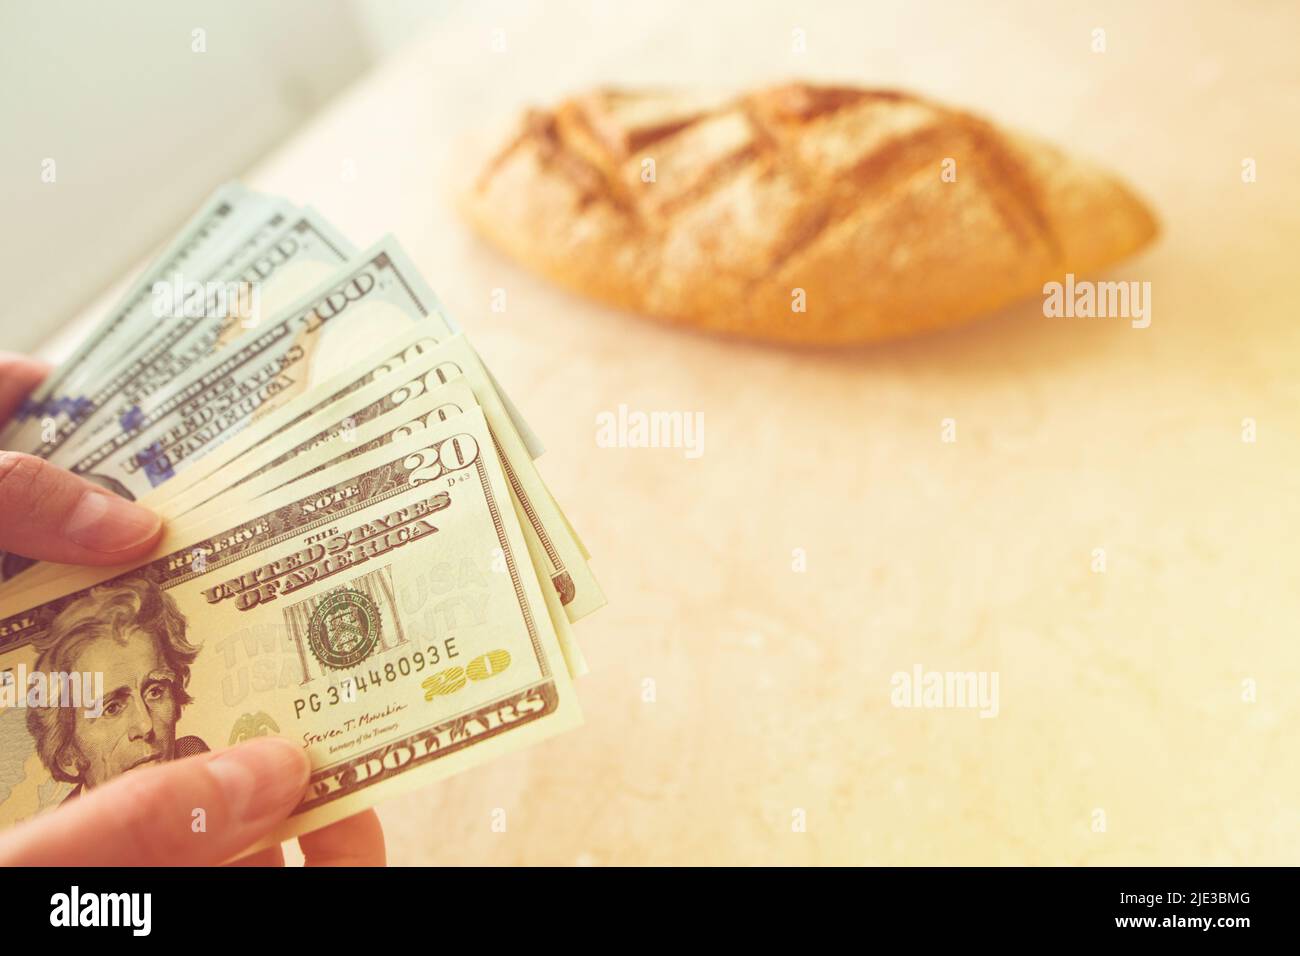 Une femme compte de l'argent sur le fond d'un pain. Finance, budget familial, revenu, pauvreté, concept de bien-être. Banque D'Images